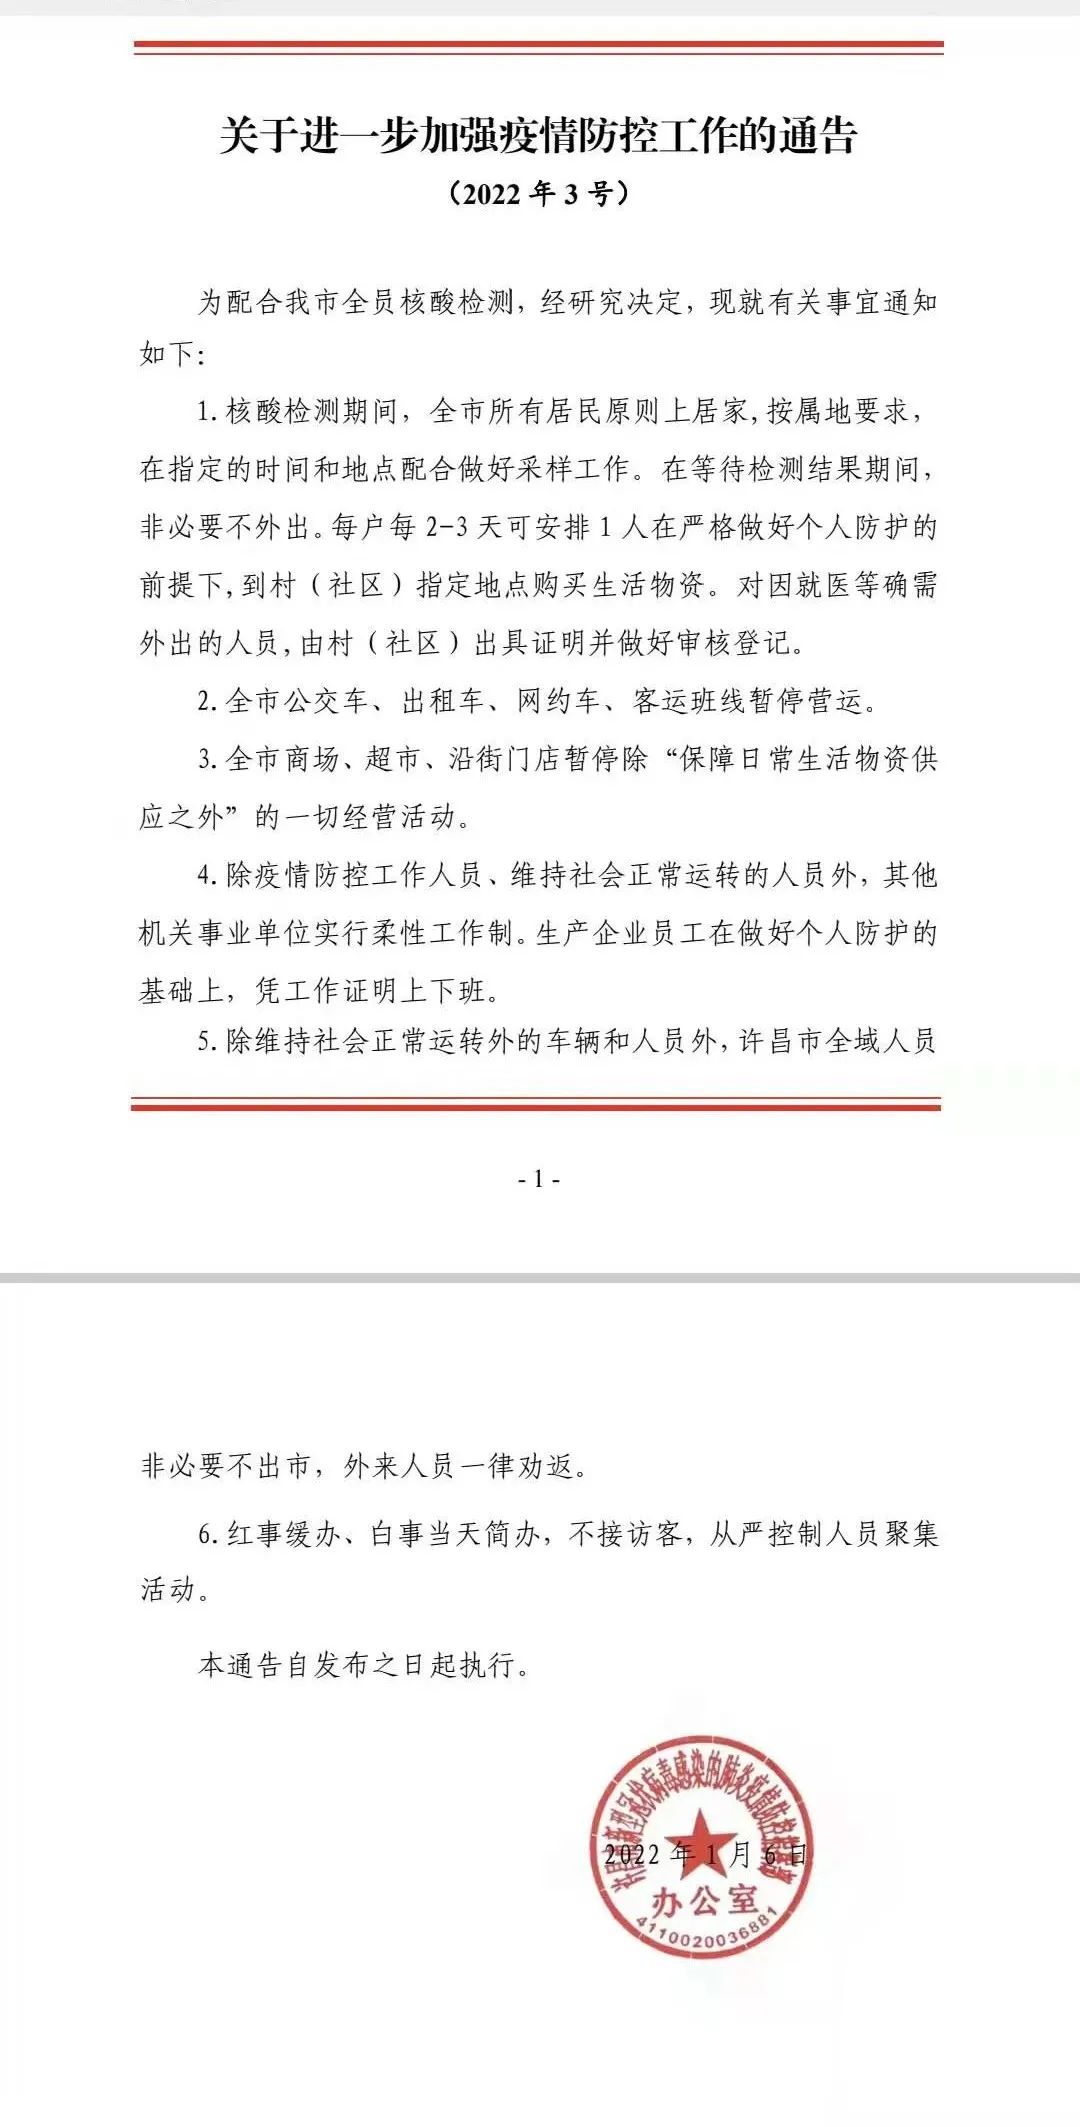 河南许昌：全员核酸检测期间居民原则上居家 公交等暂停运营